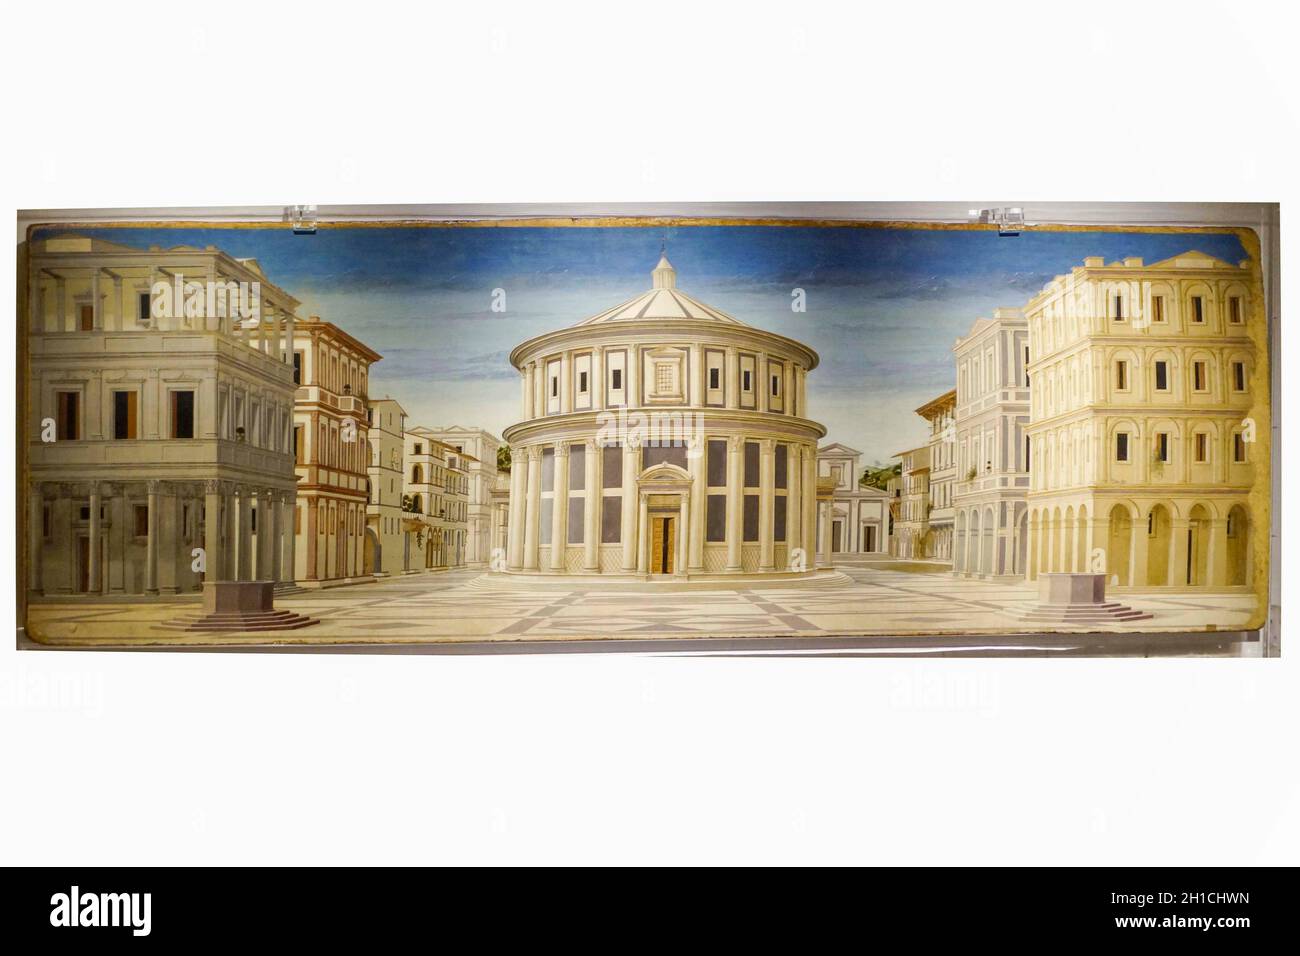 Palais ducal, ville idéale attribuée à Luciano Laurana, site du patrimoine mondial de l'UNESCO, Urbino, Marche, Italie, Europe Banque D'Images